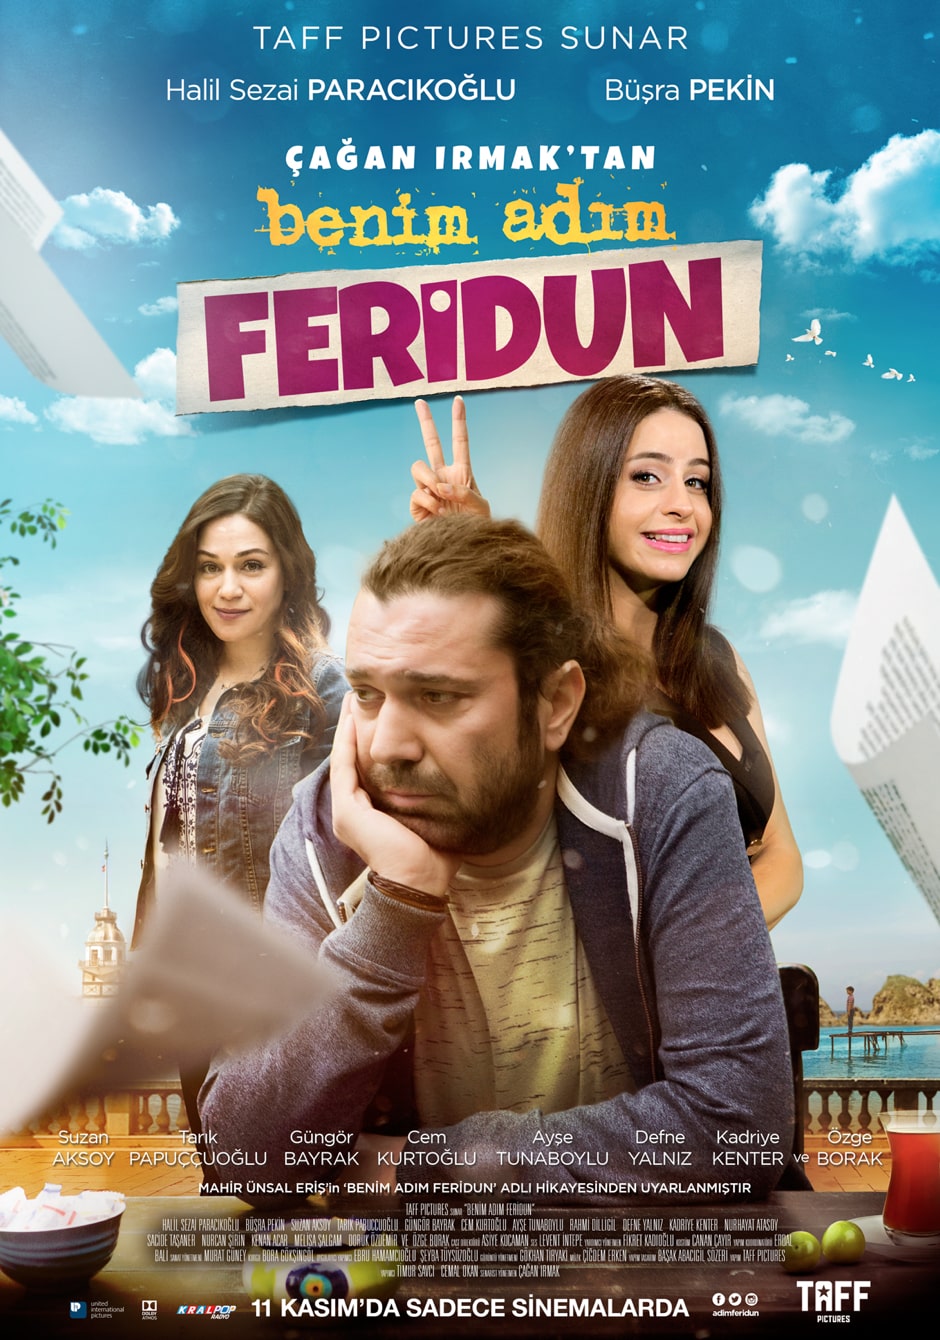 BENIM_ADIM_FERIDUN Copy-min